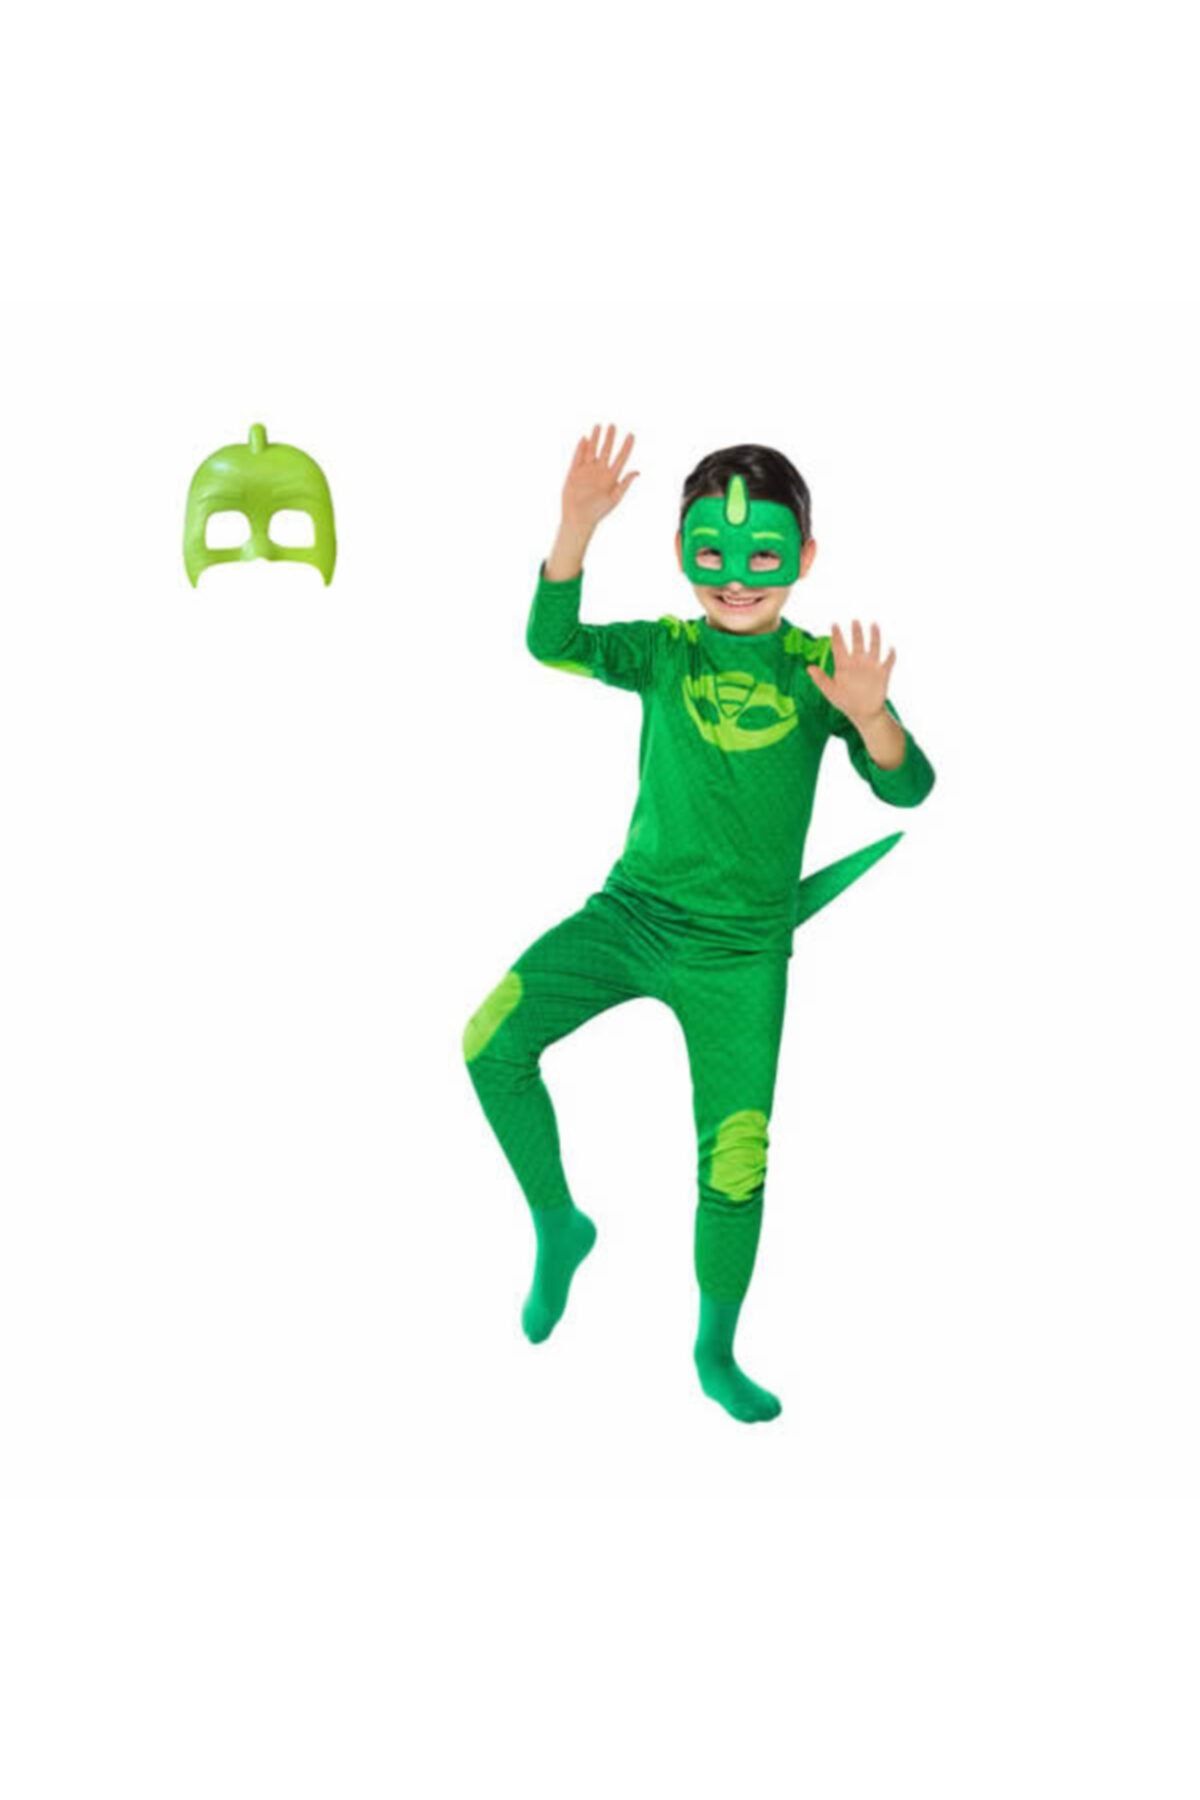 Pj Masks Pj Maskeliler Gekko Kertenkele Çocuk Pijamaskeliler Pj Mask Yeşil Kostümü 2 Maskeli